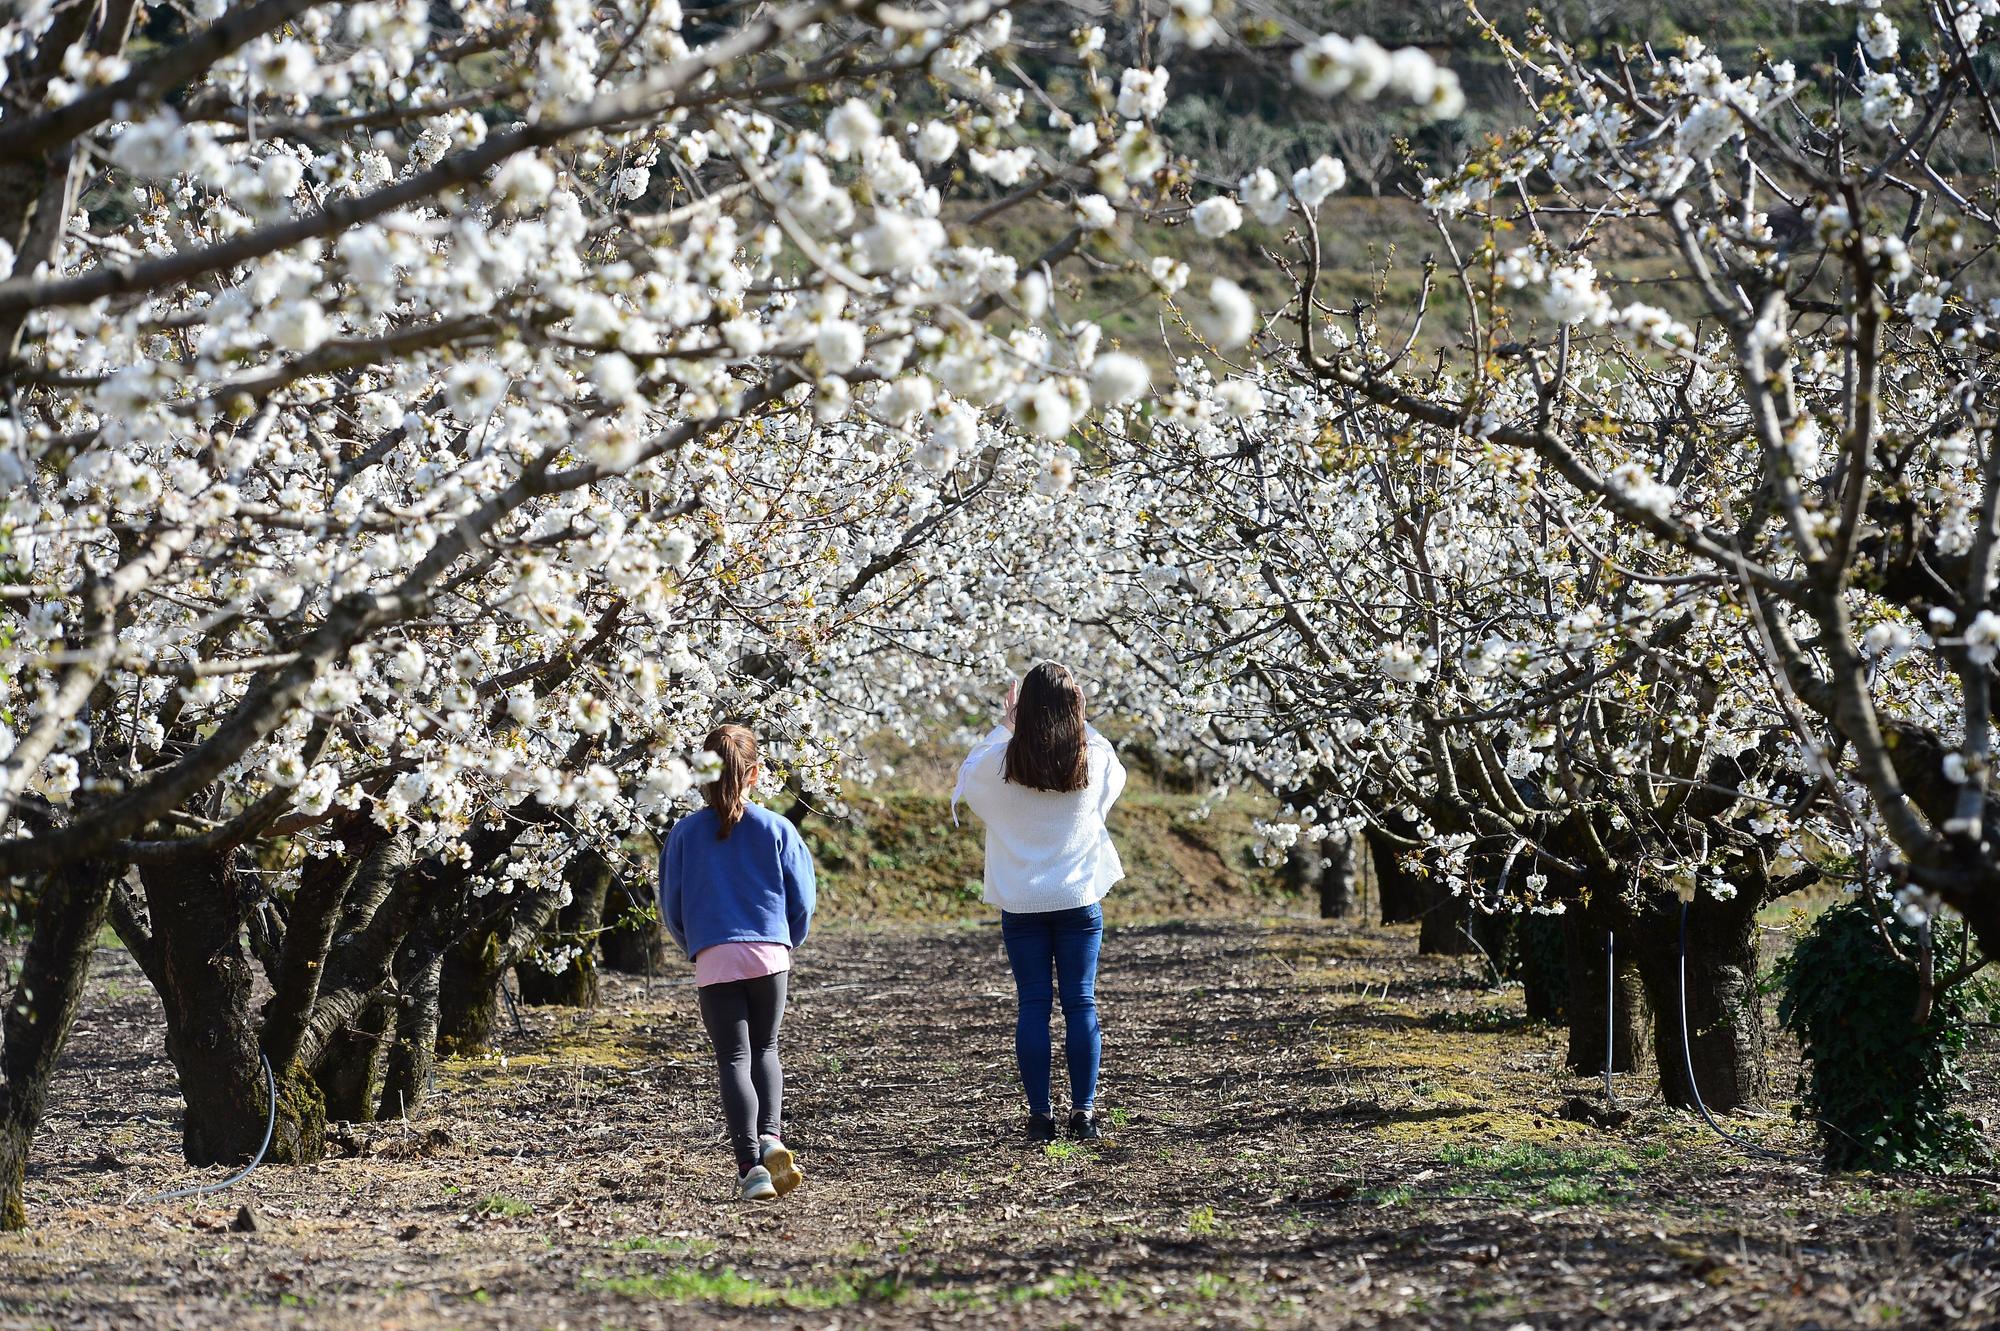 2021. Valle del Jerte con cerezos en flor.